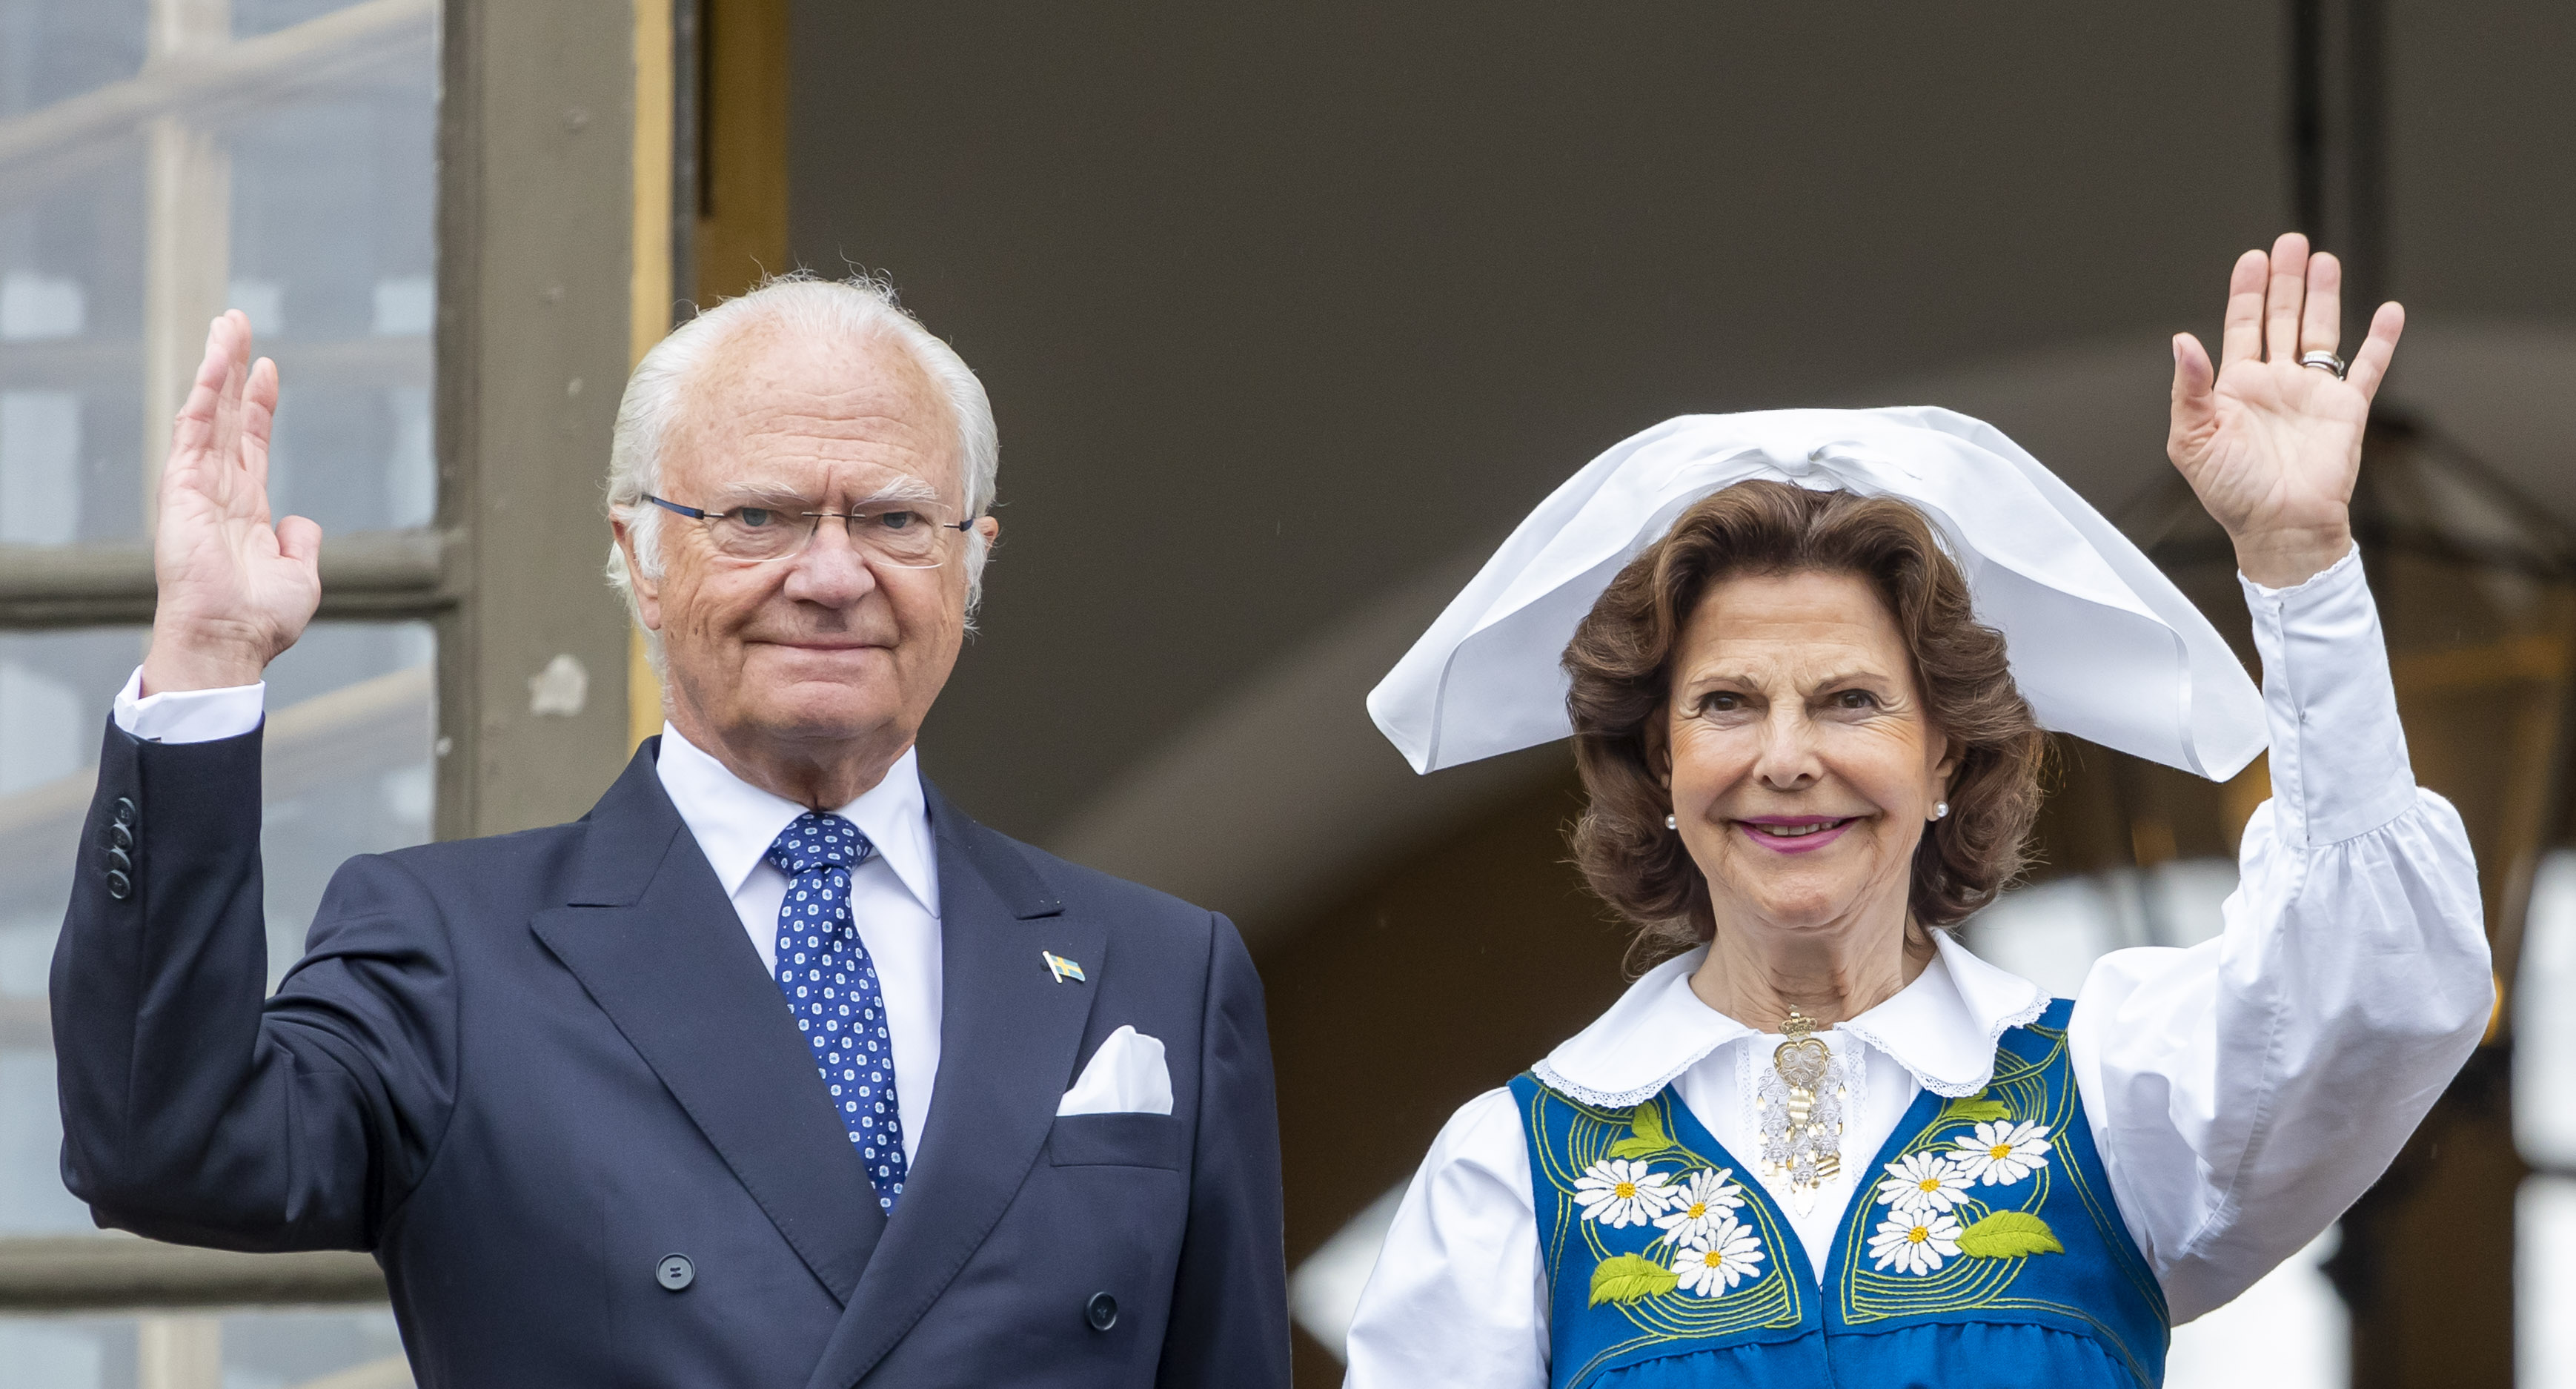 Alicia Vikander, Skådespelare, Hedda Stiernstedt, Kung Carl XVI Gustaf, Kungafamiljen, Drottning Silvia